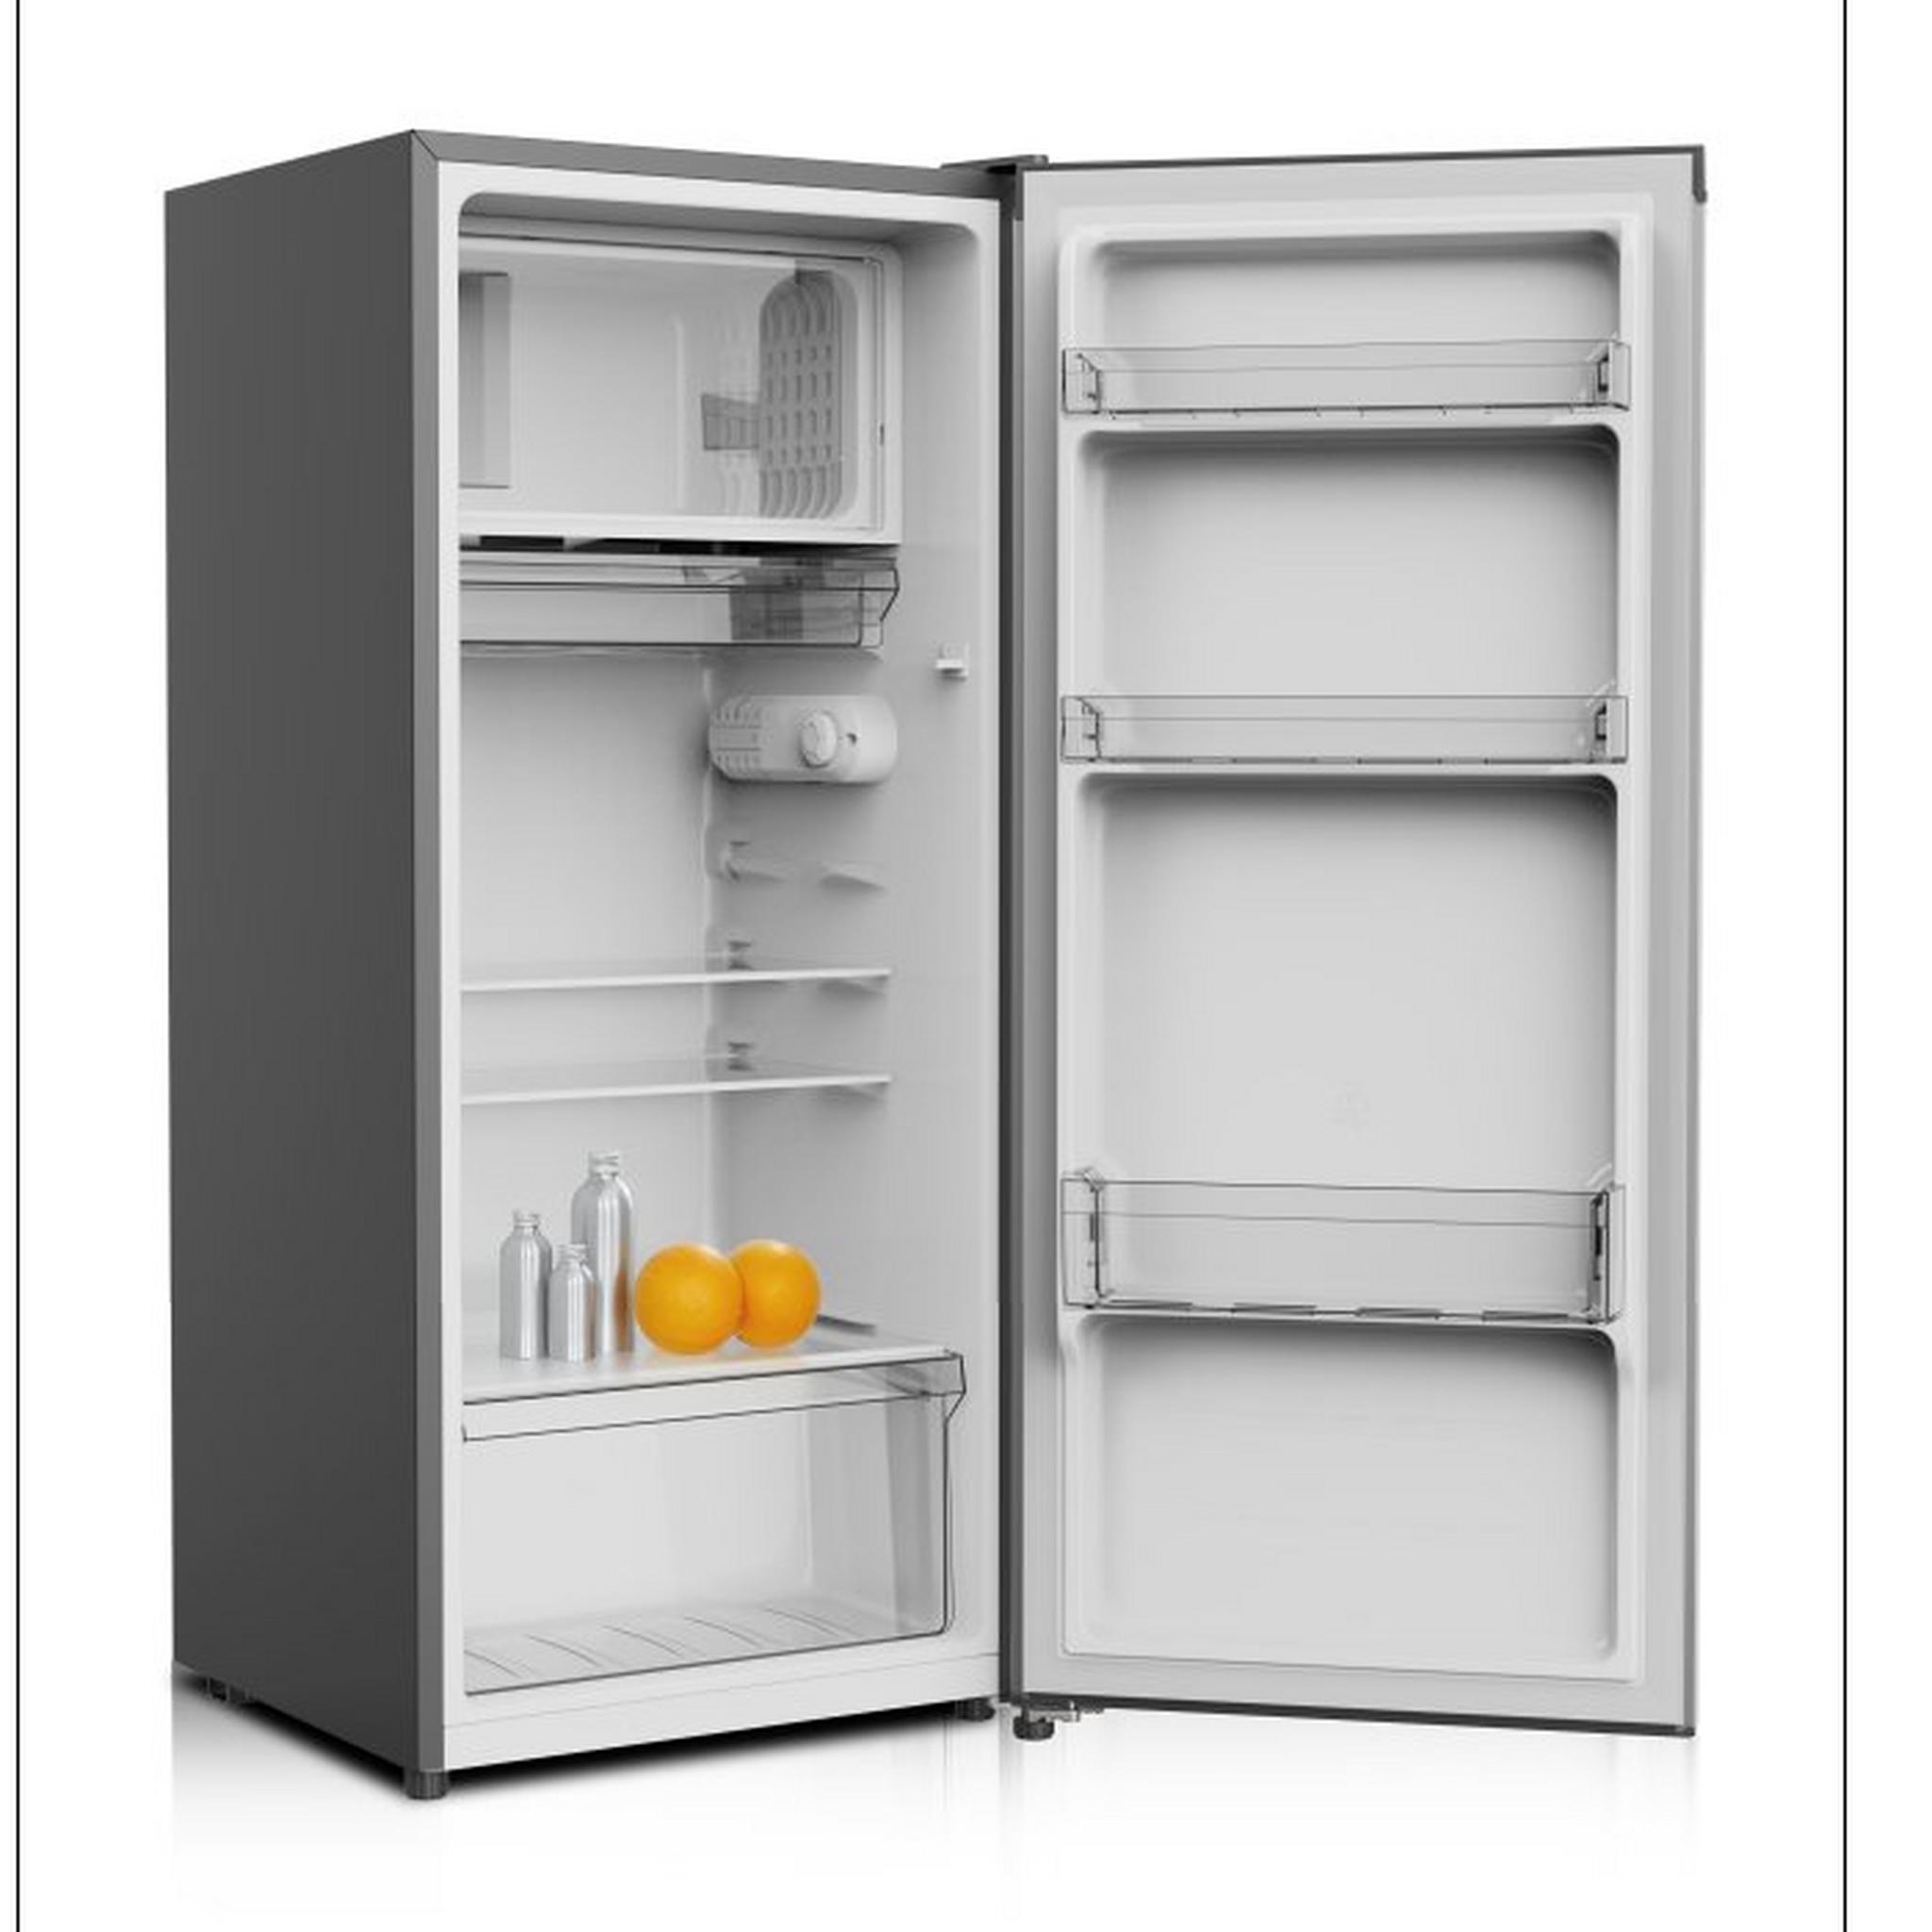 DAEWOO Single Door Refrigerator, 6 CFT, 175 Liters, DROG-175-DSC82 - Silver